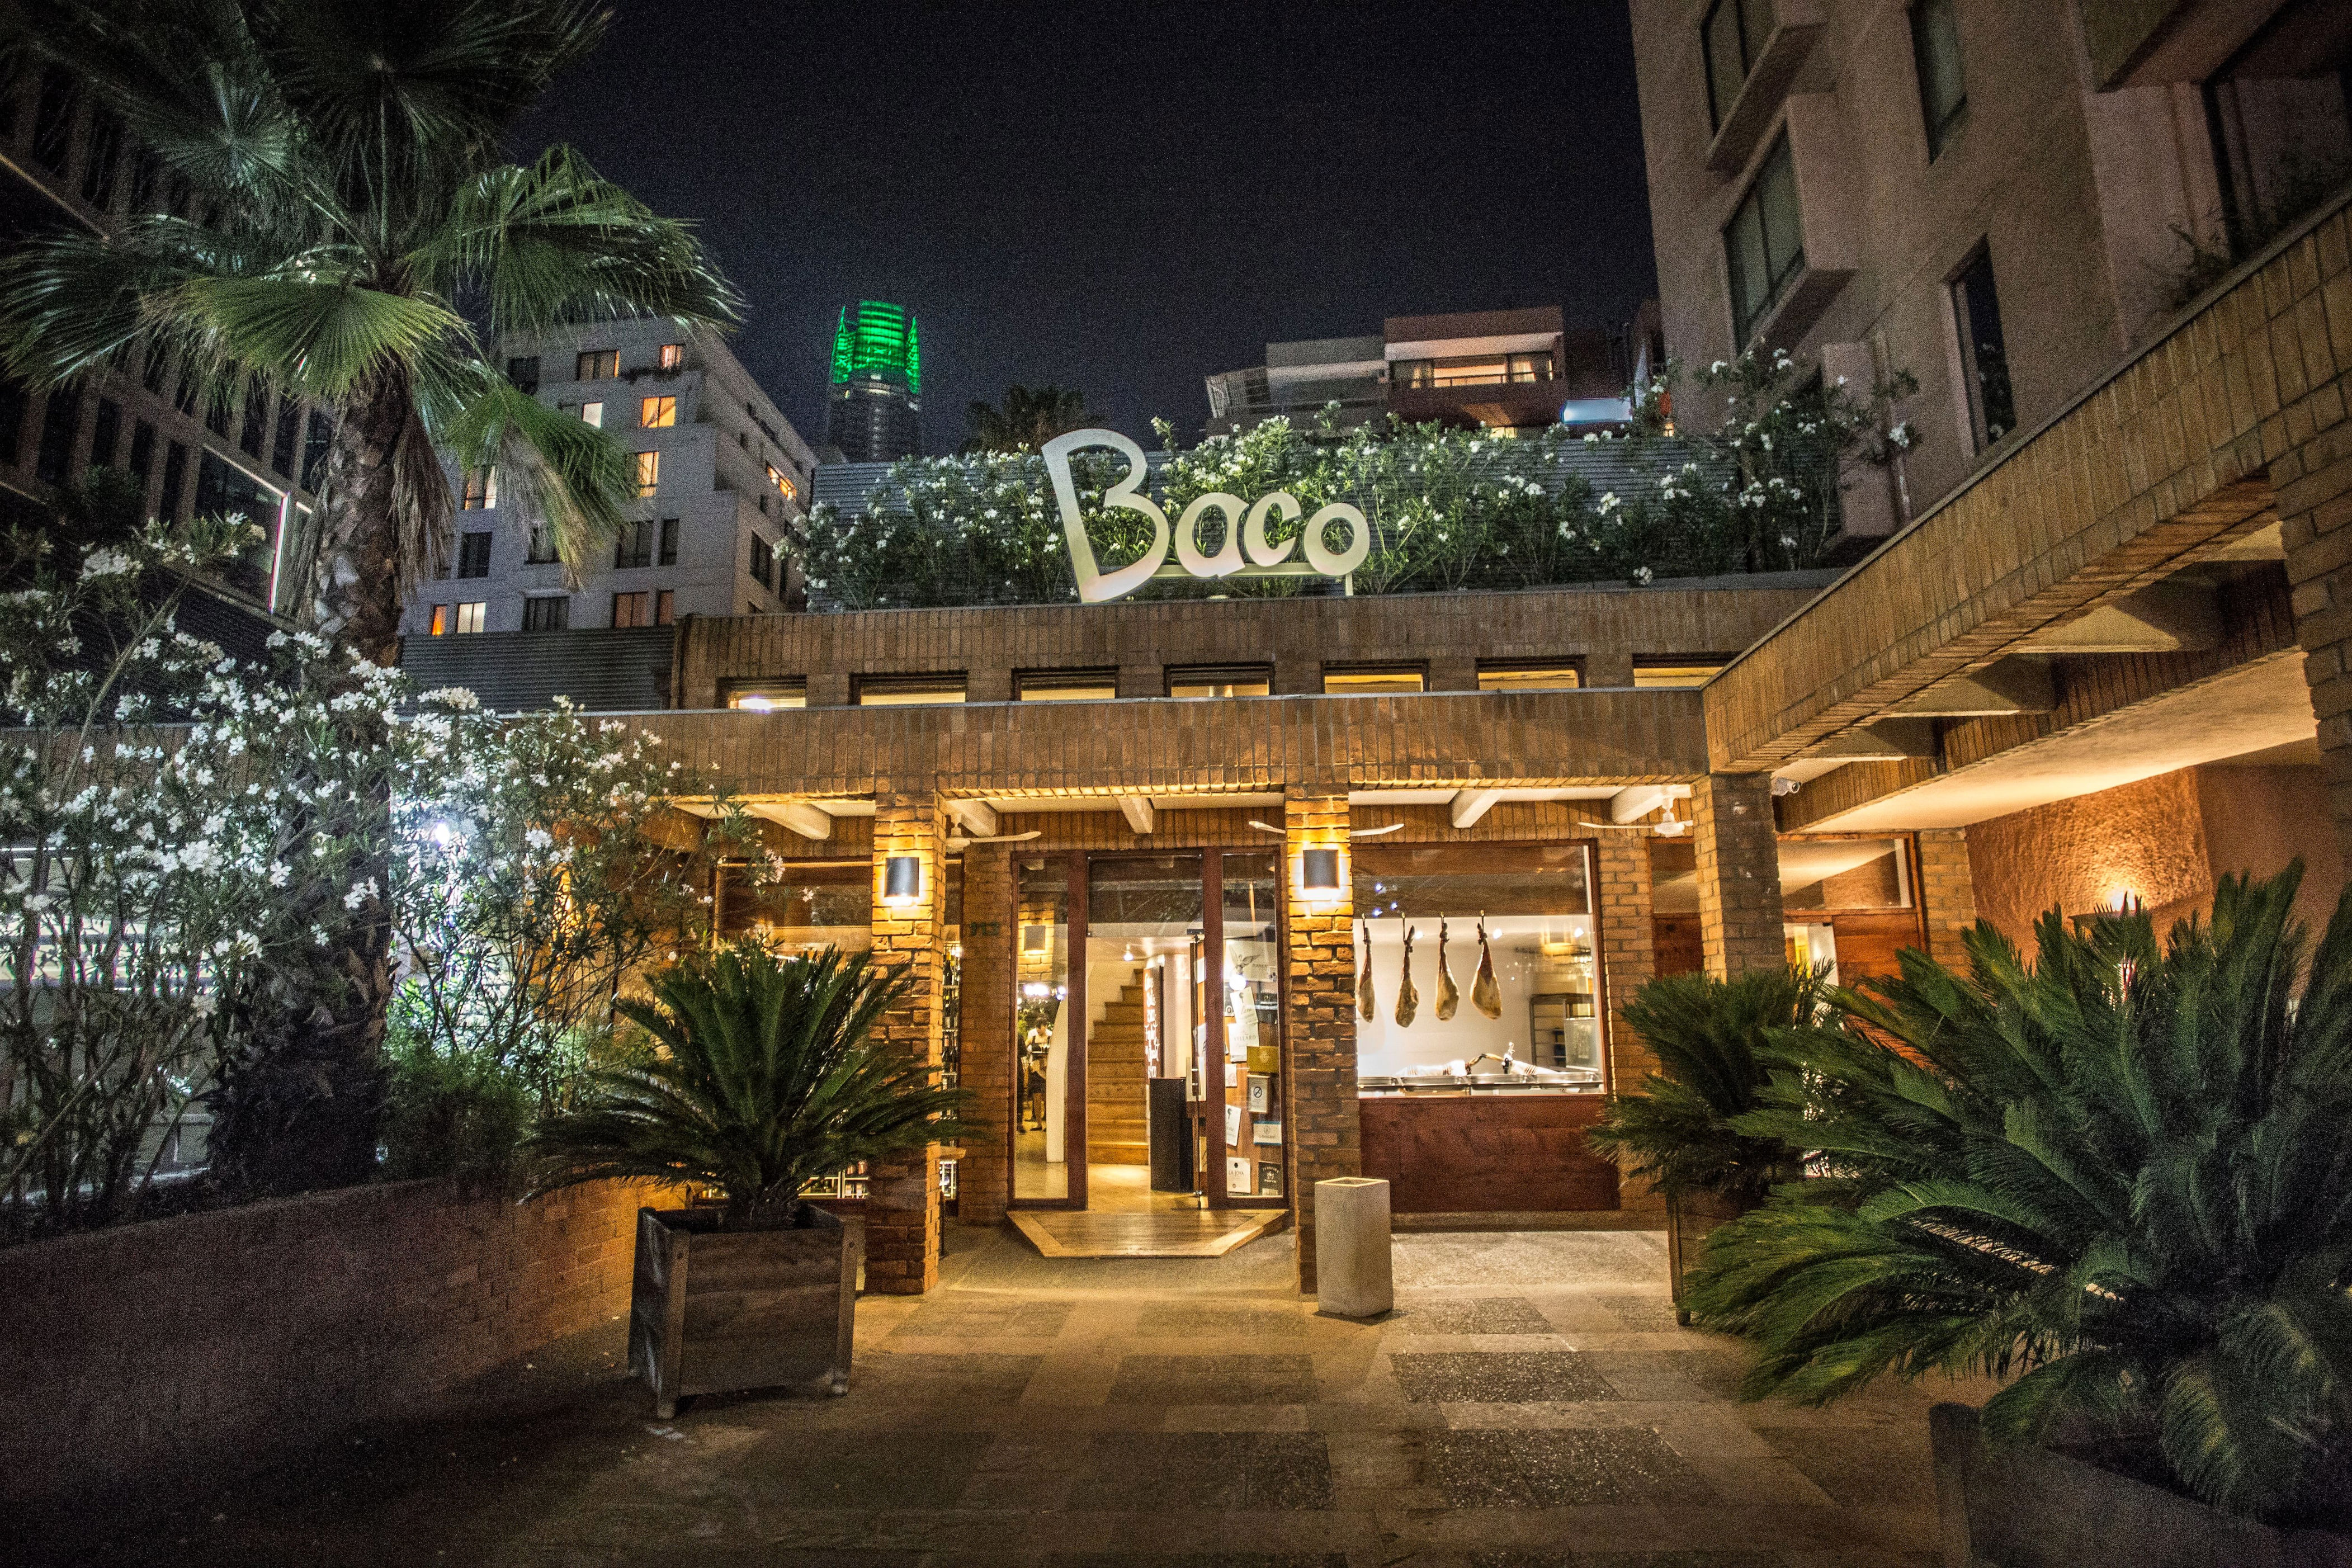 baco vs. baco: dueño de restaurant en providencia demanda a empresario por uso de marca idéntica sin autorización